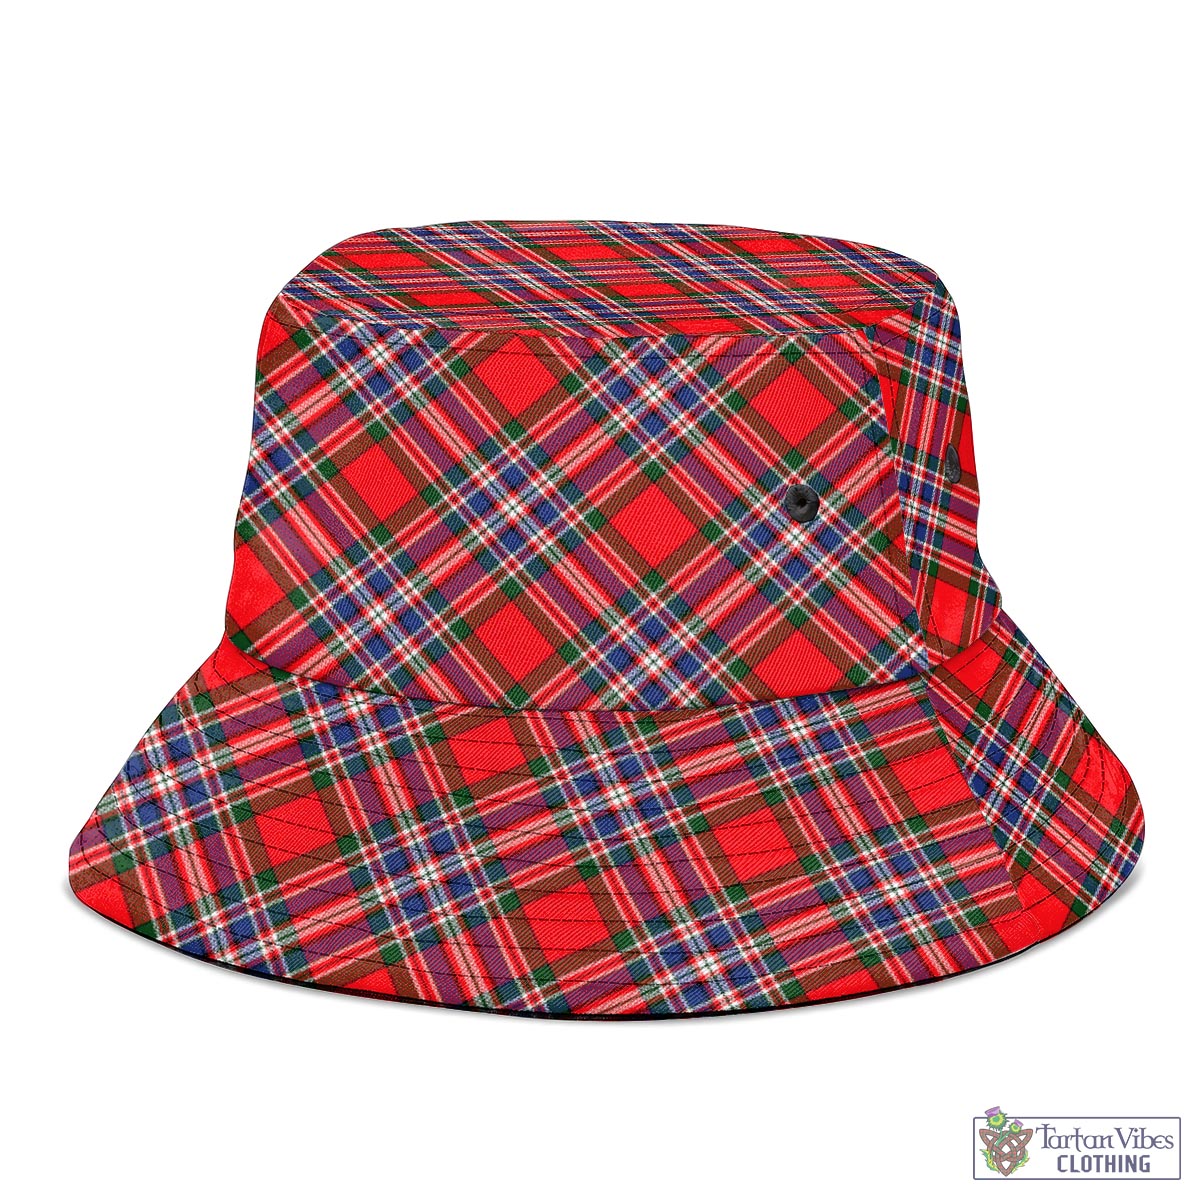 Tartan Vibes Clothing MacFarlane Modern Tartan Bucket Hat